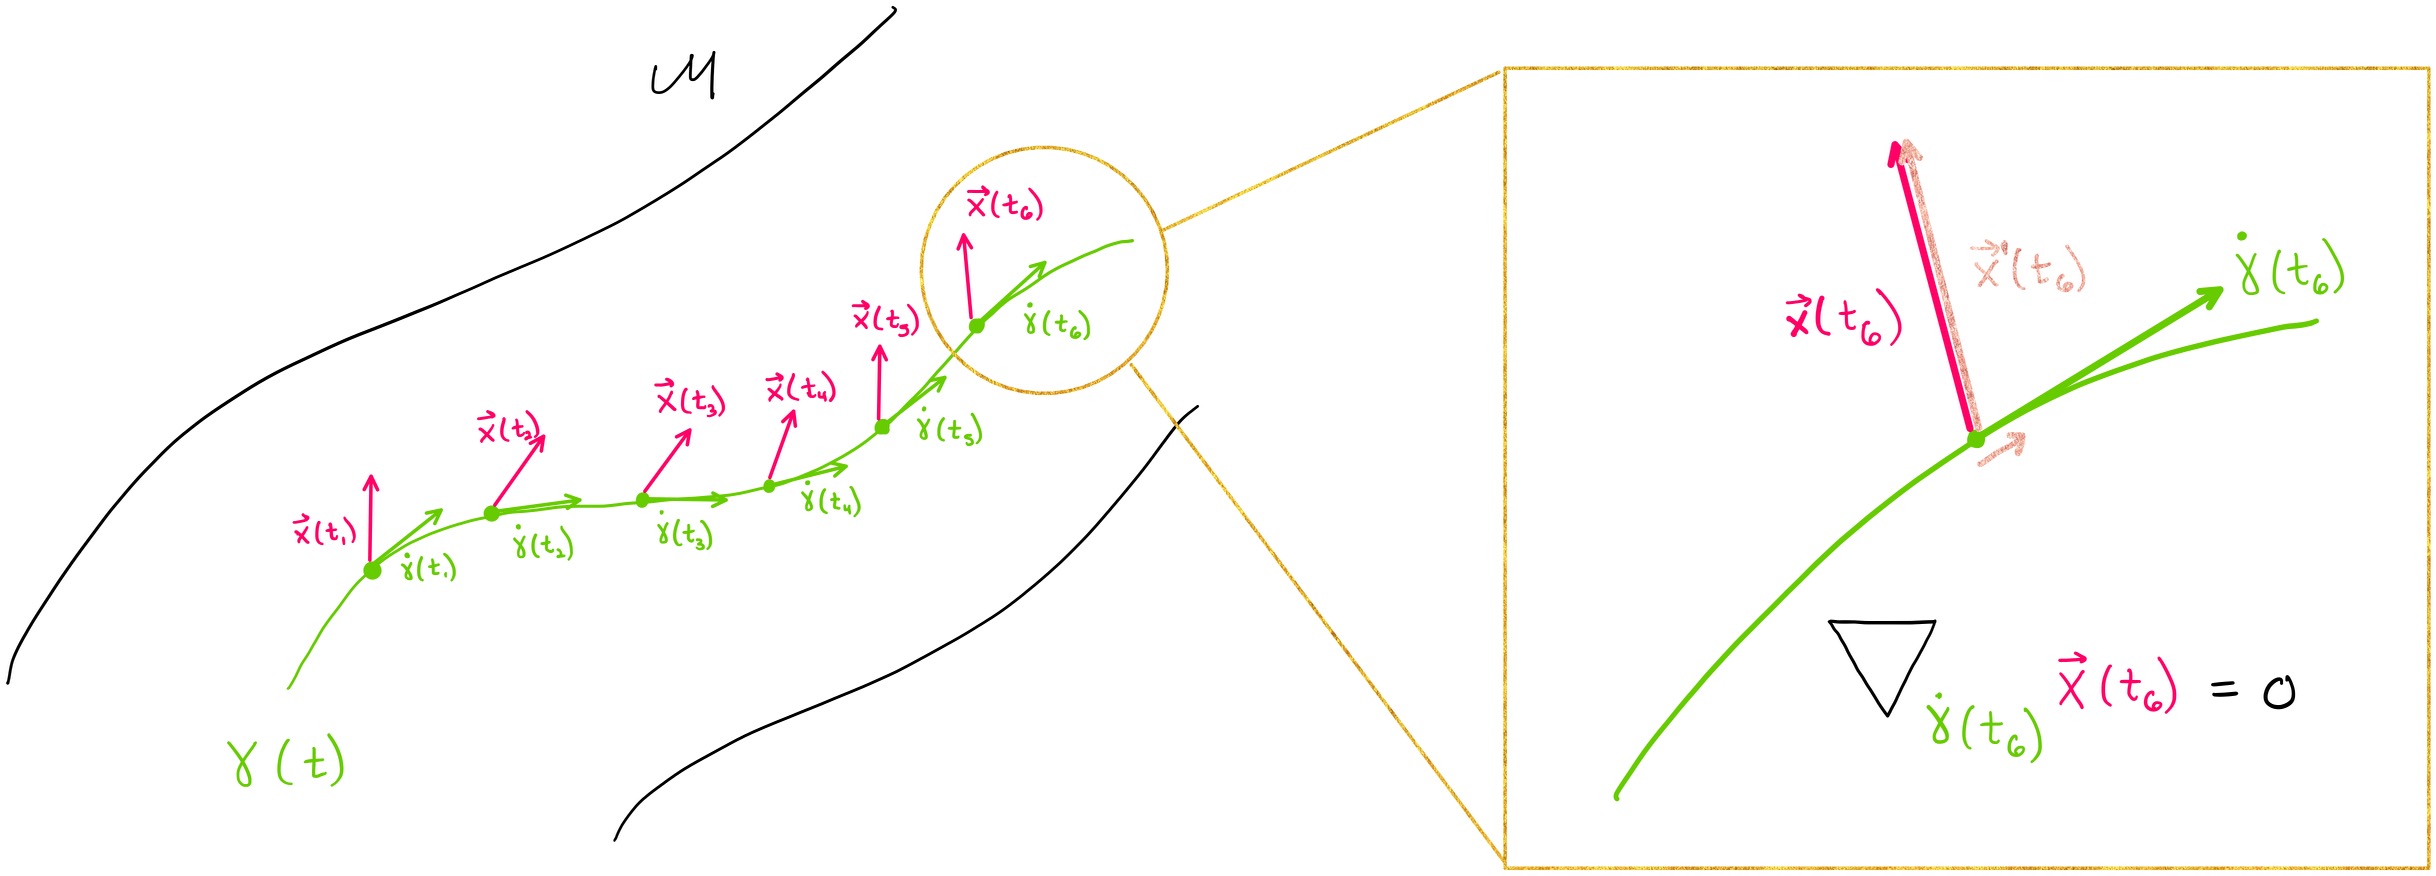 parallel vector field